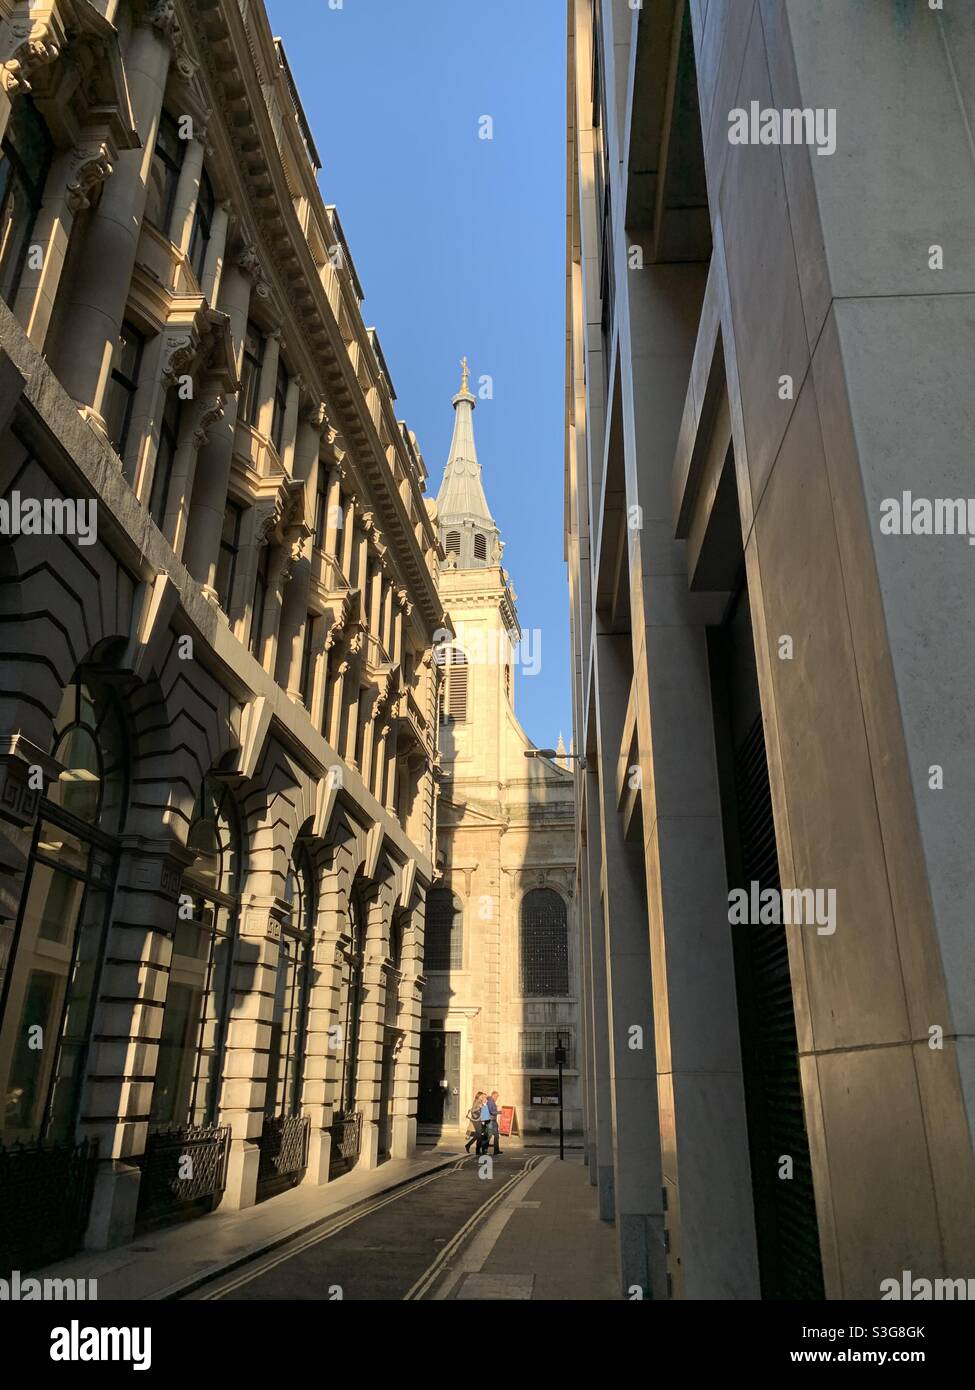 Die Stadt London und eine der vielen Kirchen, die auf den kleinen Straßen zwischen allen Büroblöcken zu finden sind Stockfoto